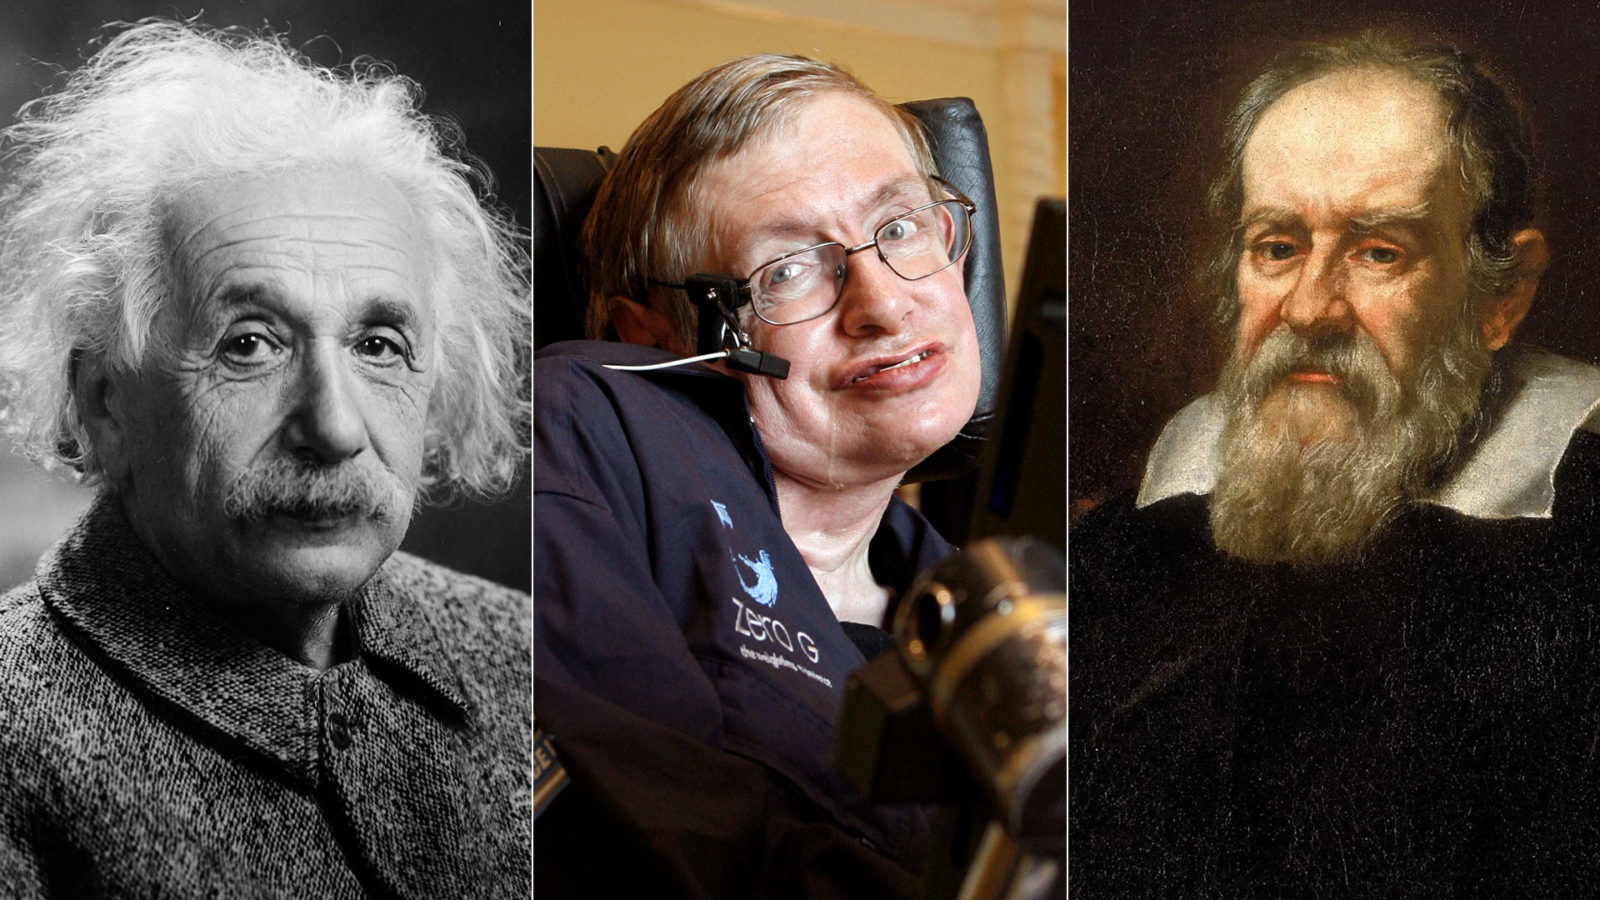 ¿Una conexión cósmica? La misteriosa relación entre Hawking, Einstein y Galileo